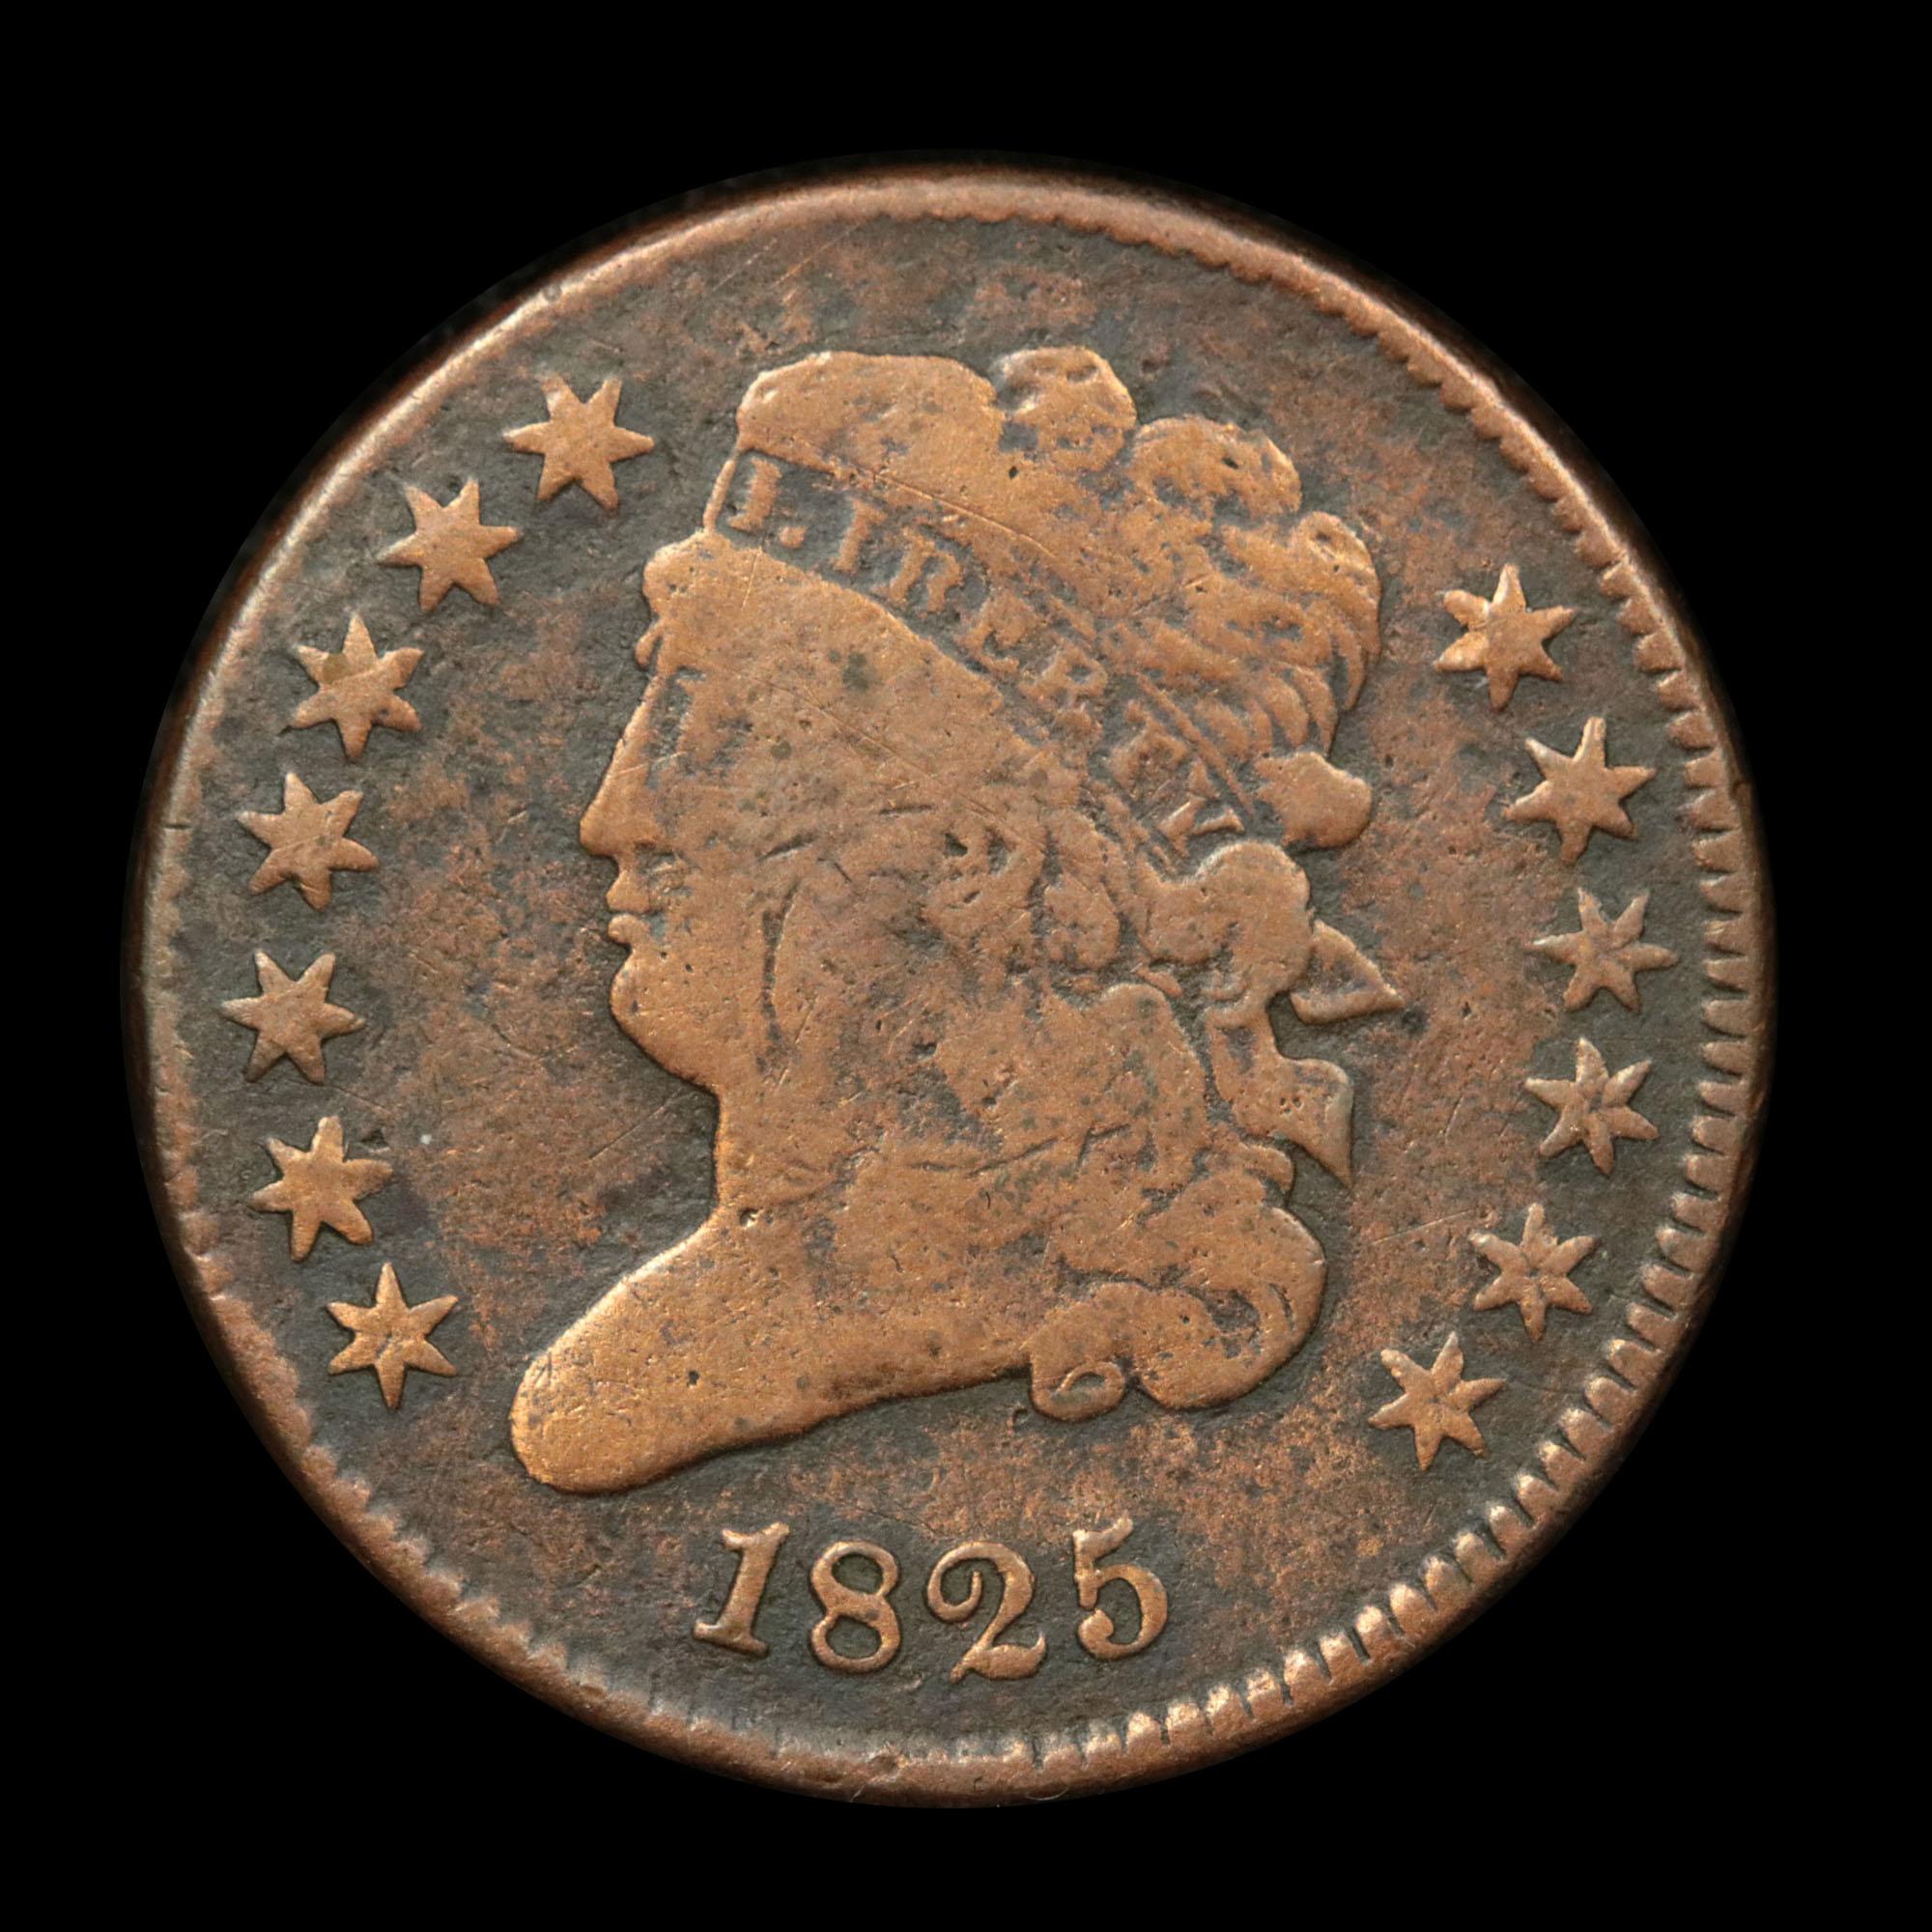 1825 Classic Head half cent 1/2c Grades f, fine